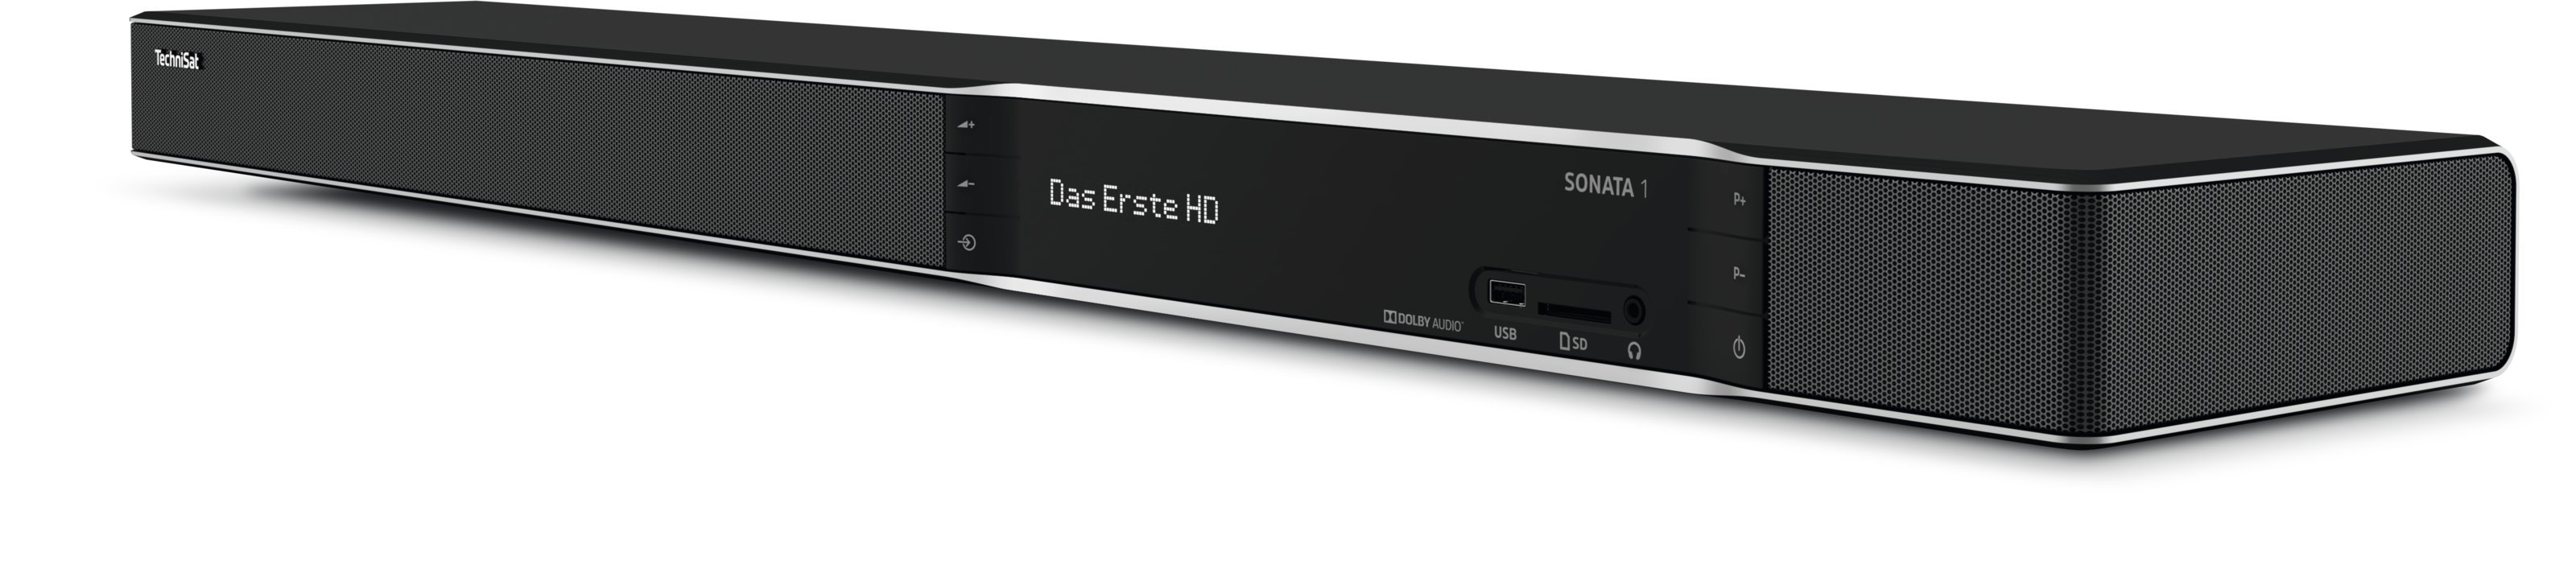 PVR-Funktion, (H.264), Tuner, DVB-S2, schwarz) 1 UHD (HDTV, Twin DVB-T, DVB-T2 DVB-C2, SONATA TECHNISAT (H.265), Receiver DVB-T2